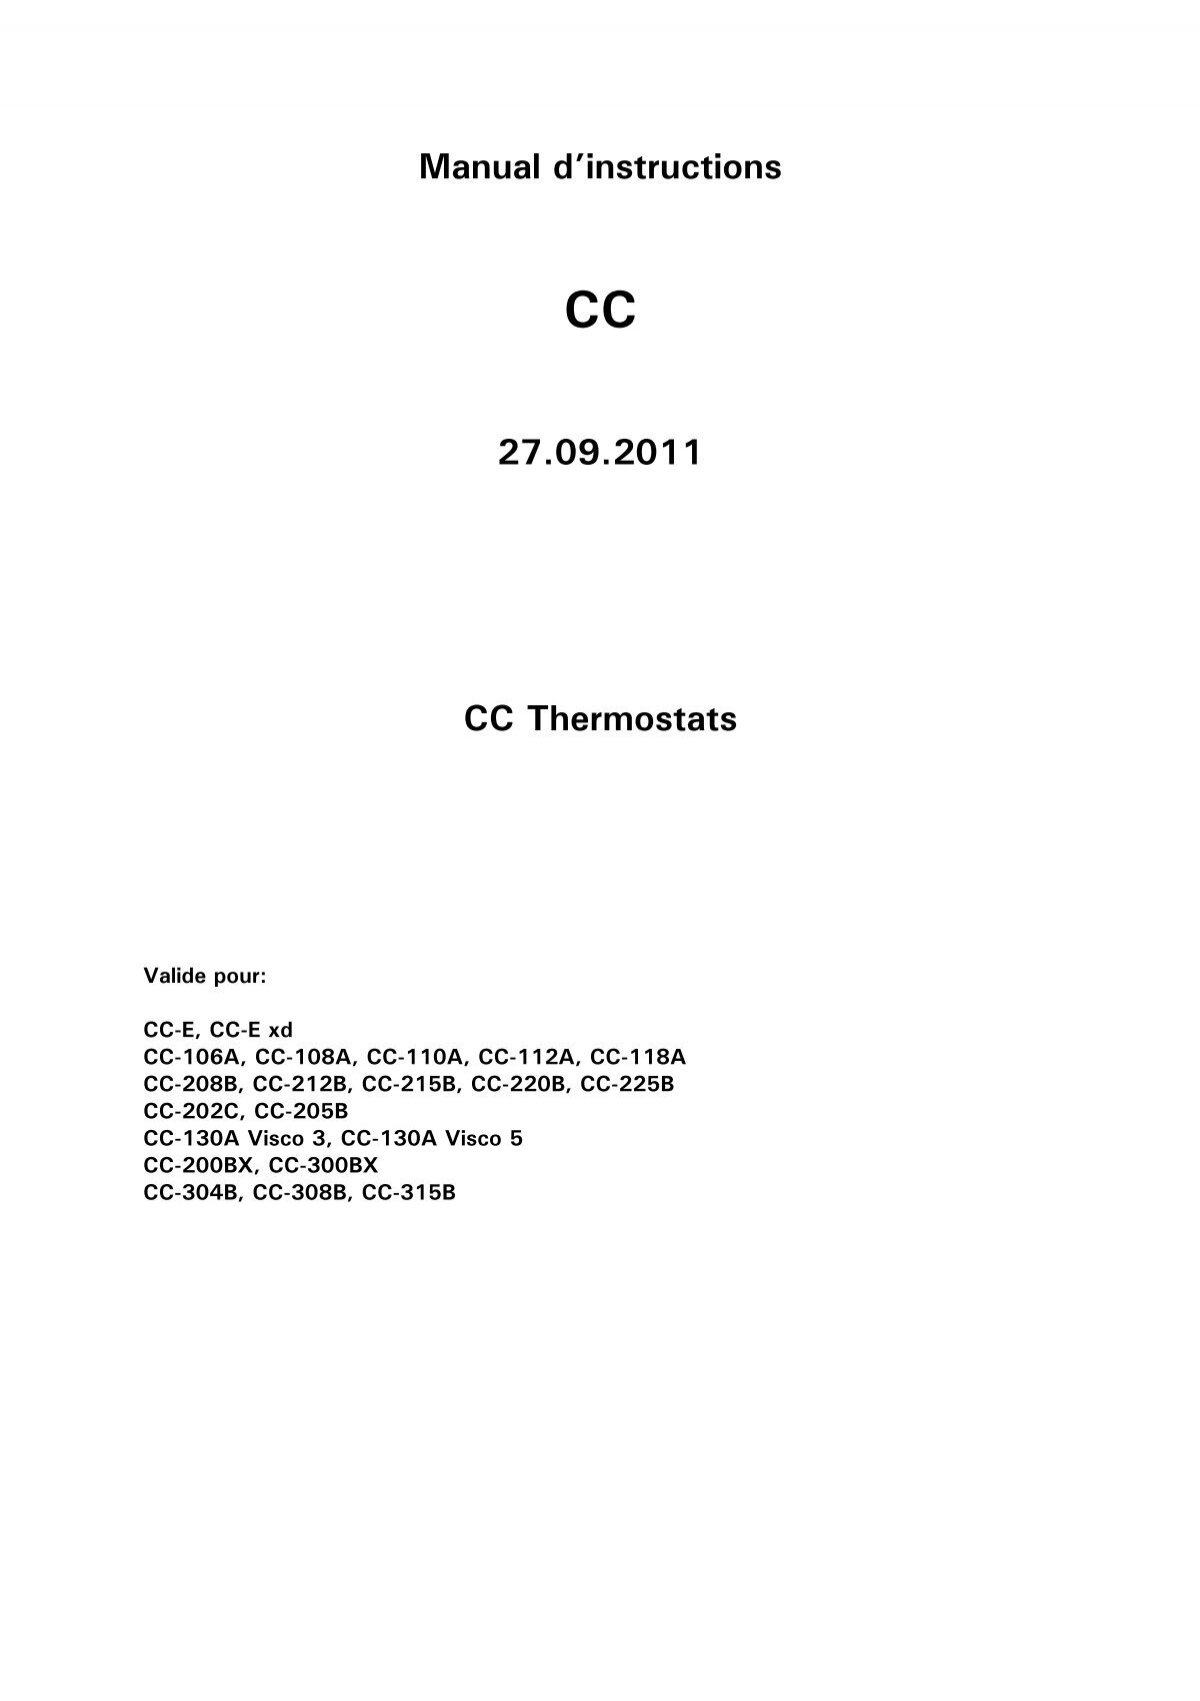 Thermostat entre 0 et 65 ° C avec prise de terre (B)